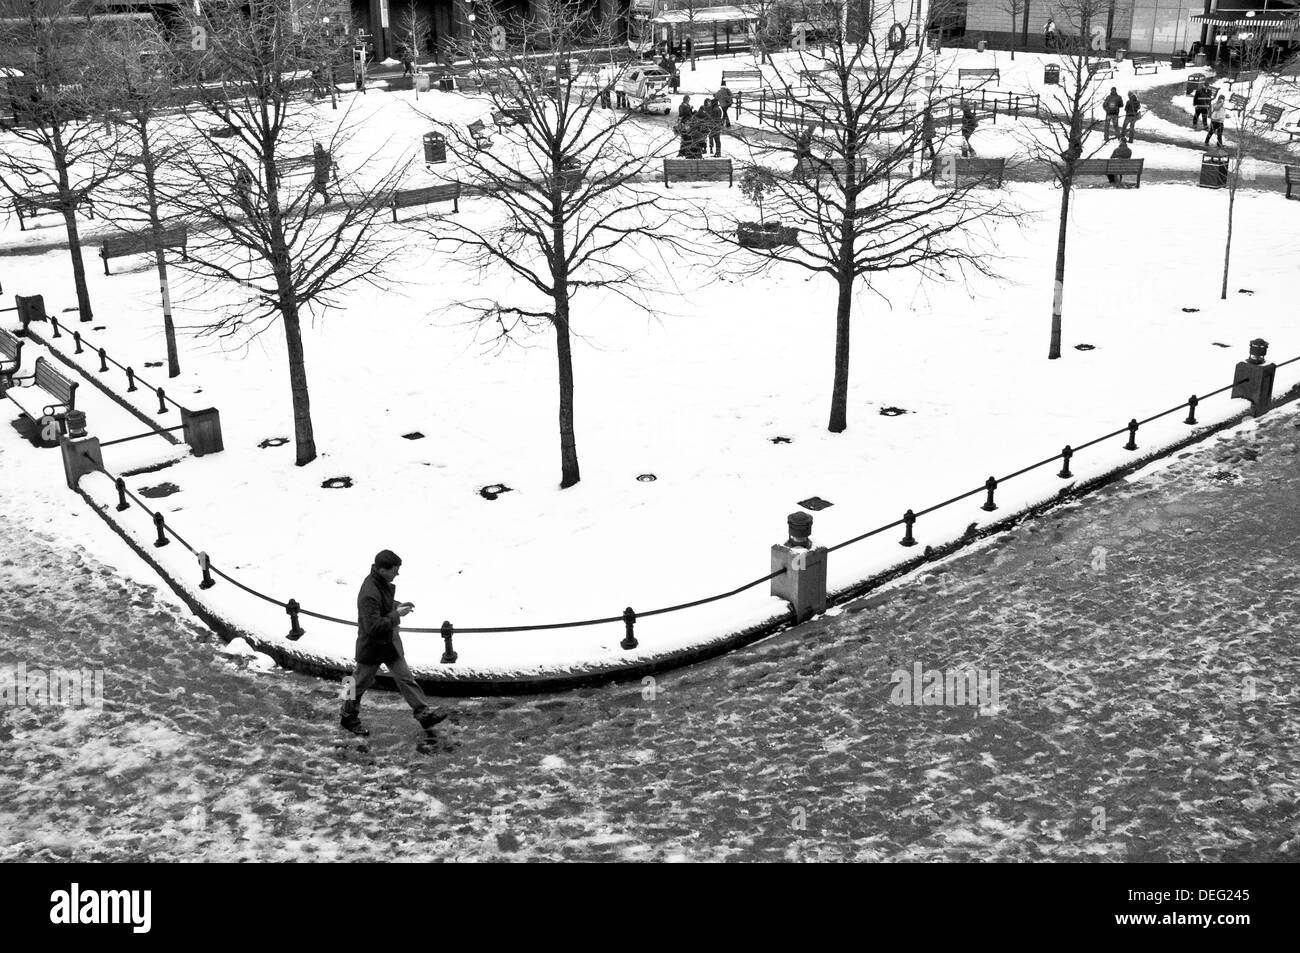 L'ancienne zone d'Eldon Square de Newcastle Upon Tyne dans la neige hiver 2012/13 Banque D'Images